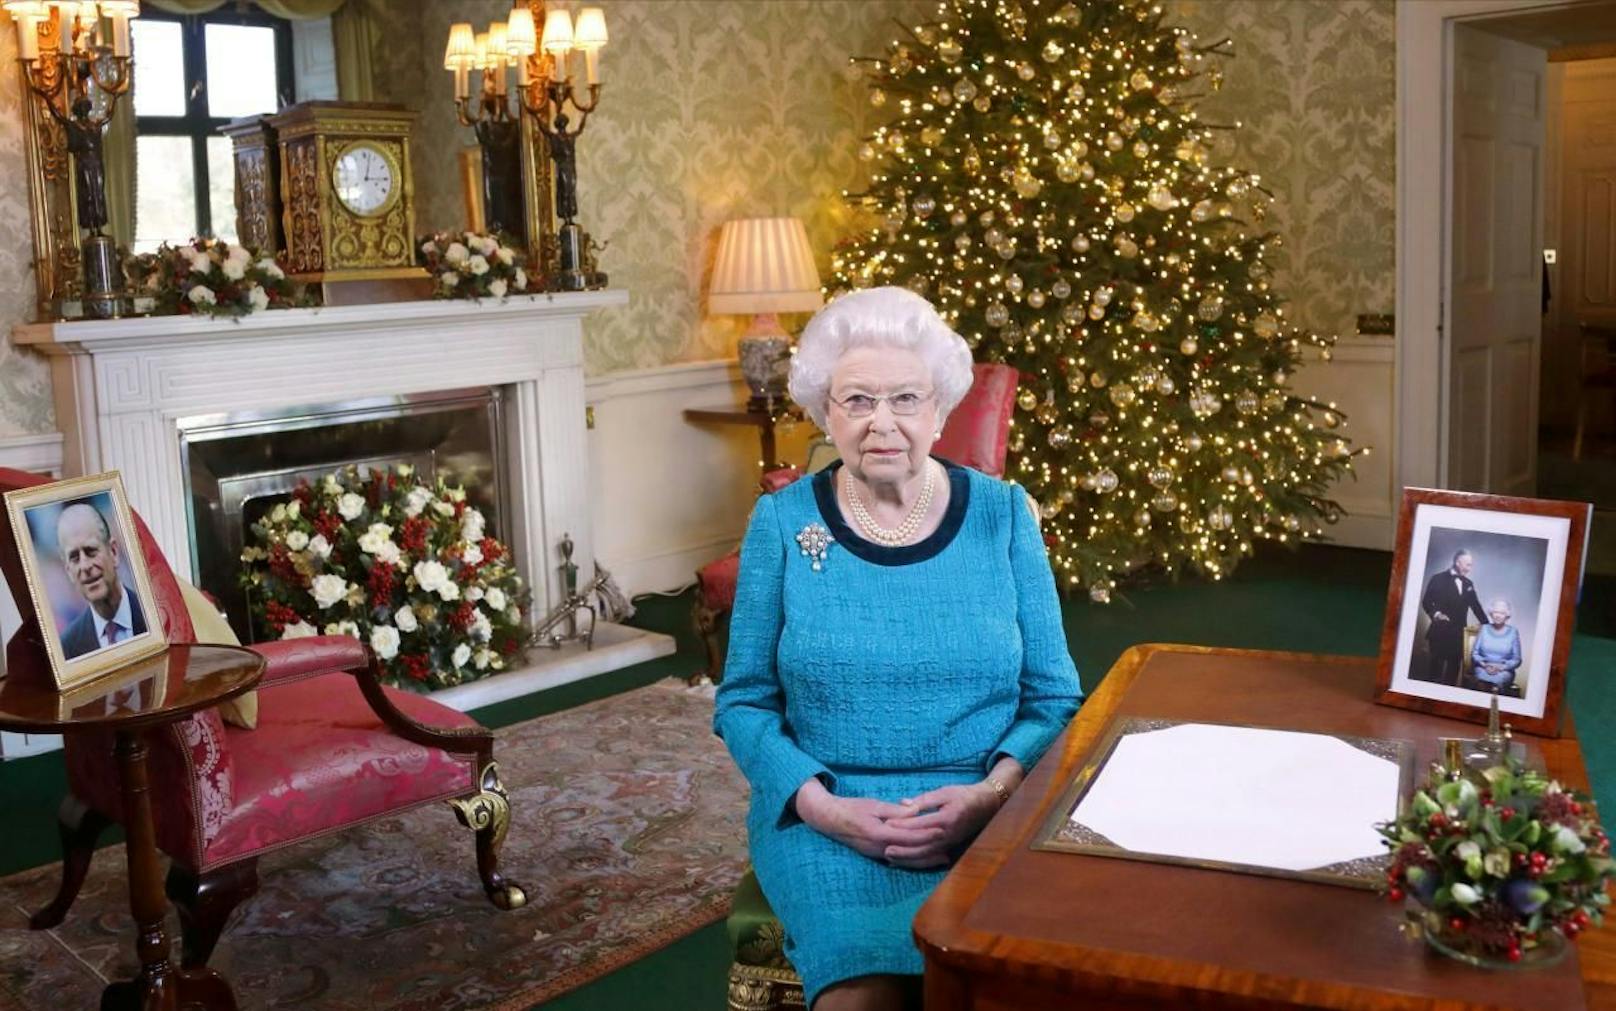 Das kann für Meghan ja heiter werden! Die Queen ist für ihre wenig ausgelassenen Weihnachtsfeiern bekannt. Zumindest bei ihrer Weihnachtsansprache im letzten Jahr tanzte, wie das Bild verrät, offensichtlich nicht der royale Bär. 